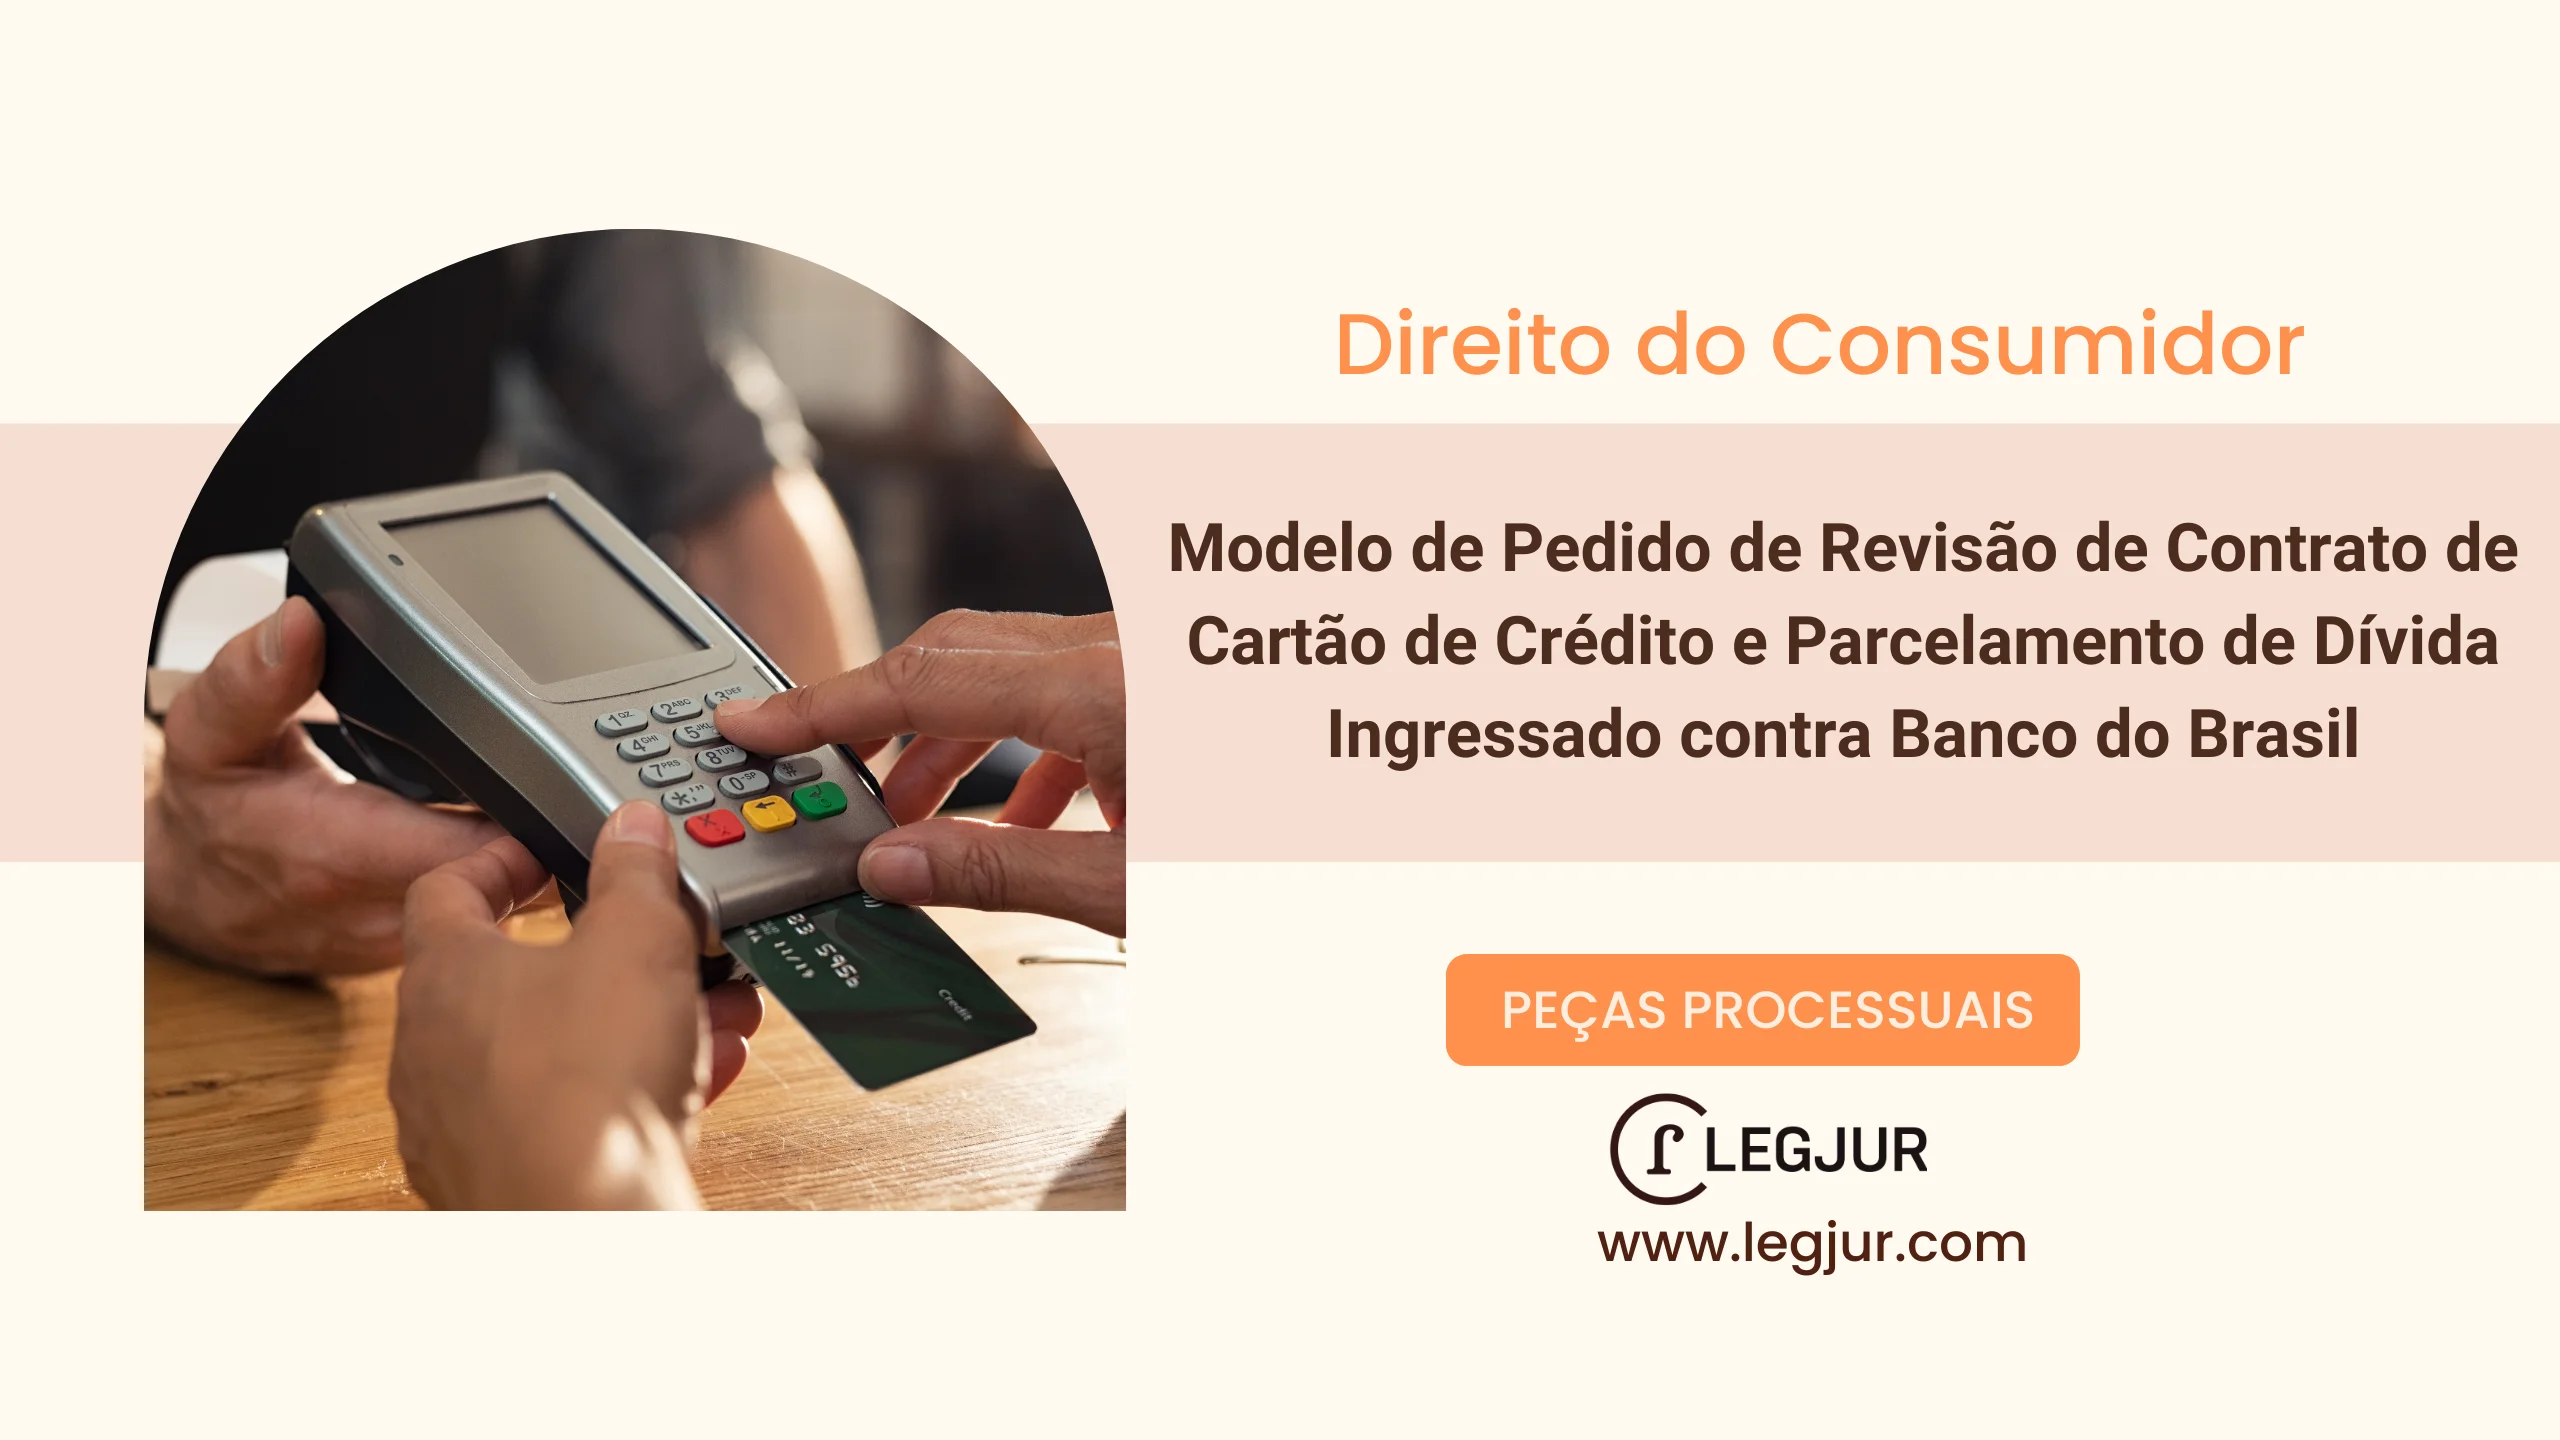 Modelo de Pedido de Revisão de Contrato de Cartão de Crédito e Parcelamento de Dívida Ingressado contra Banco do Brasil